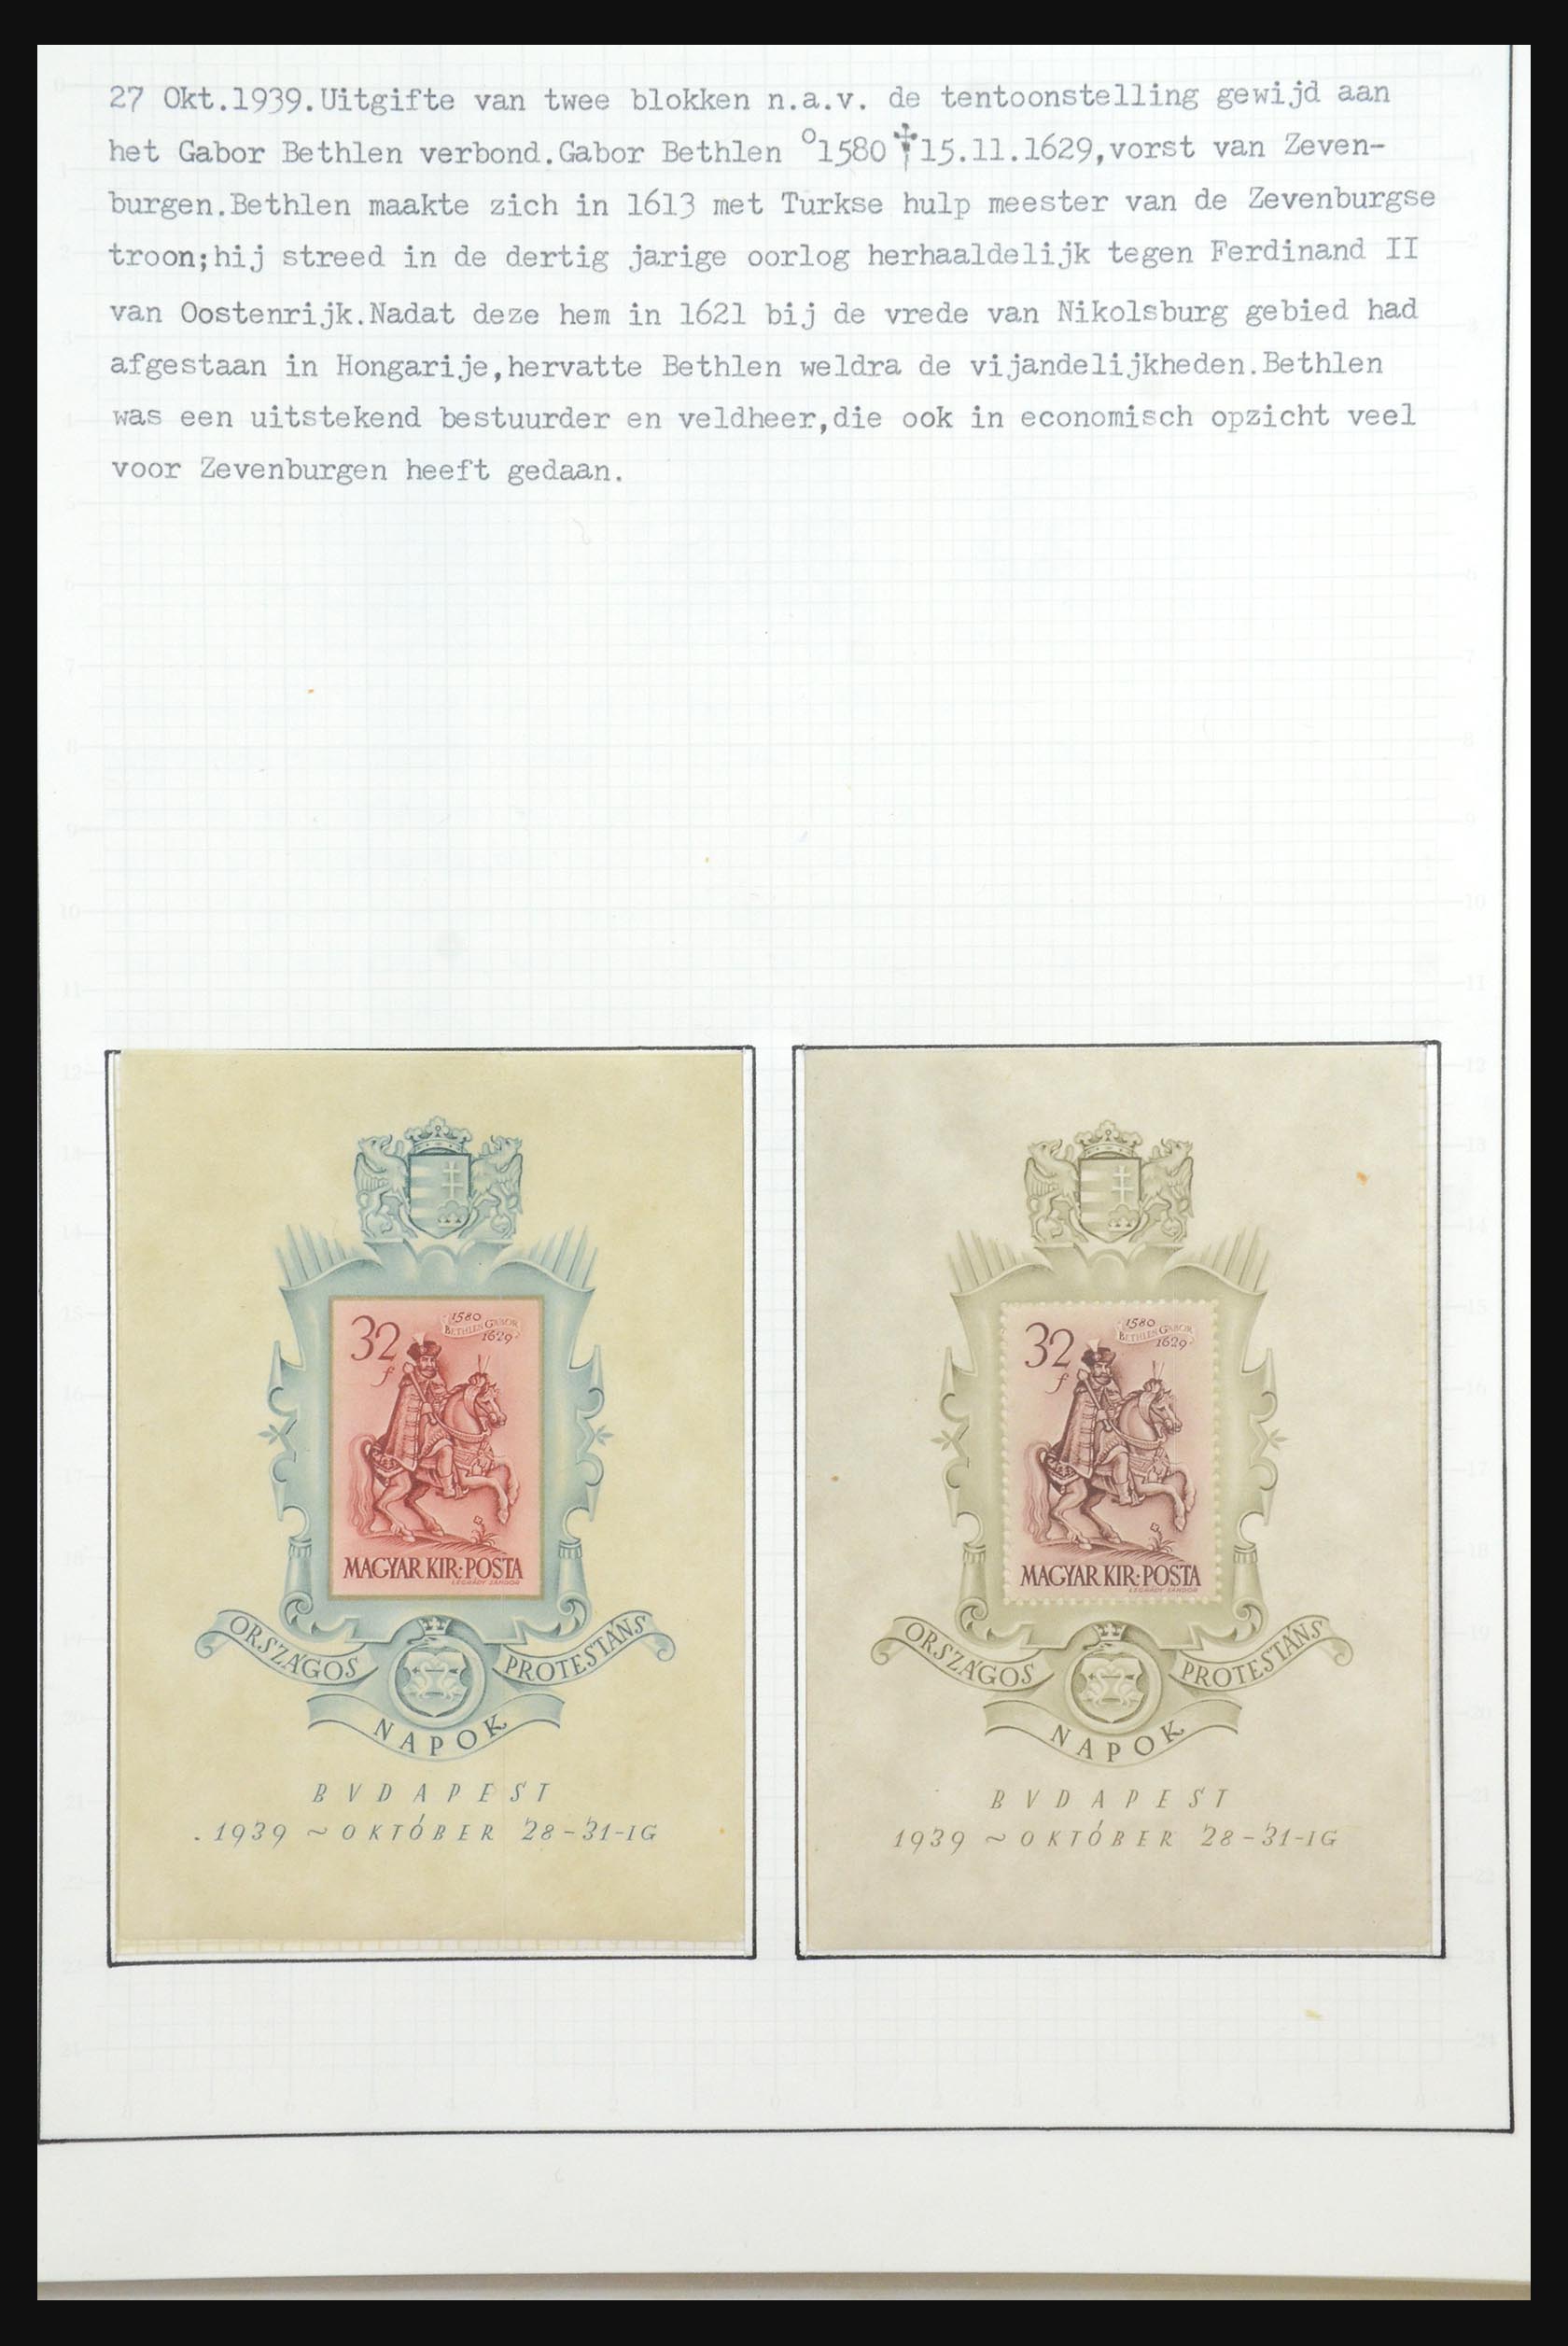 31647 118 - 31647 Hongarije 1927-1946 tentoonstellingsverzameling.